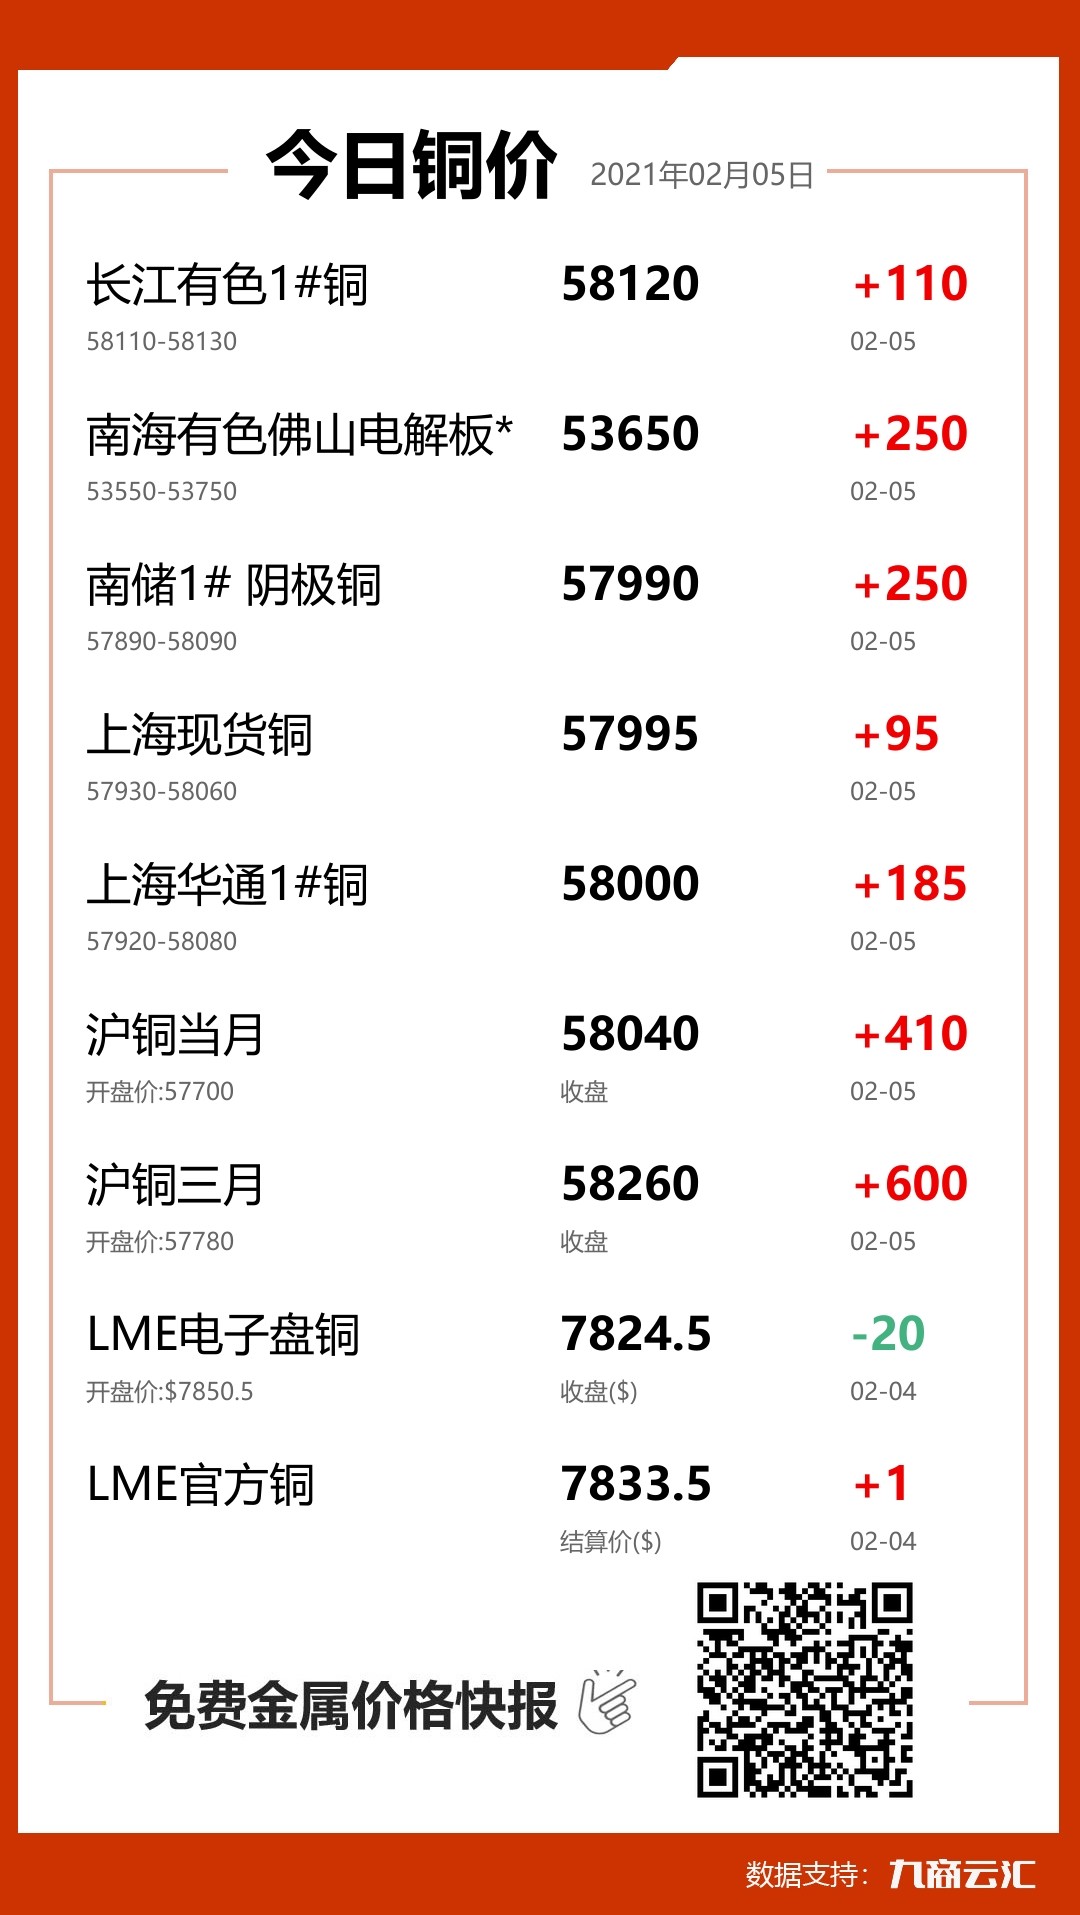 长江有色,南海有色南北价差报-130,较前一交易日上涨140;铜价指数报